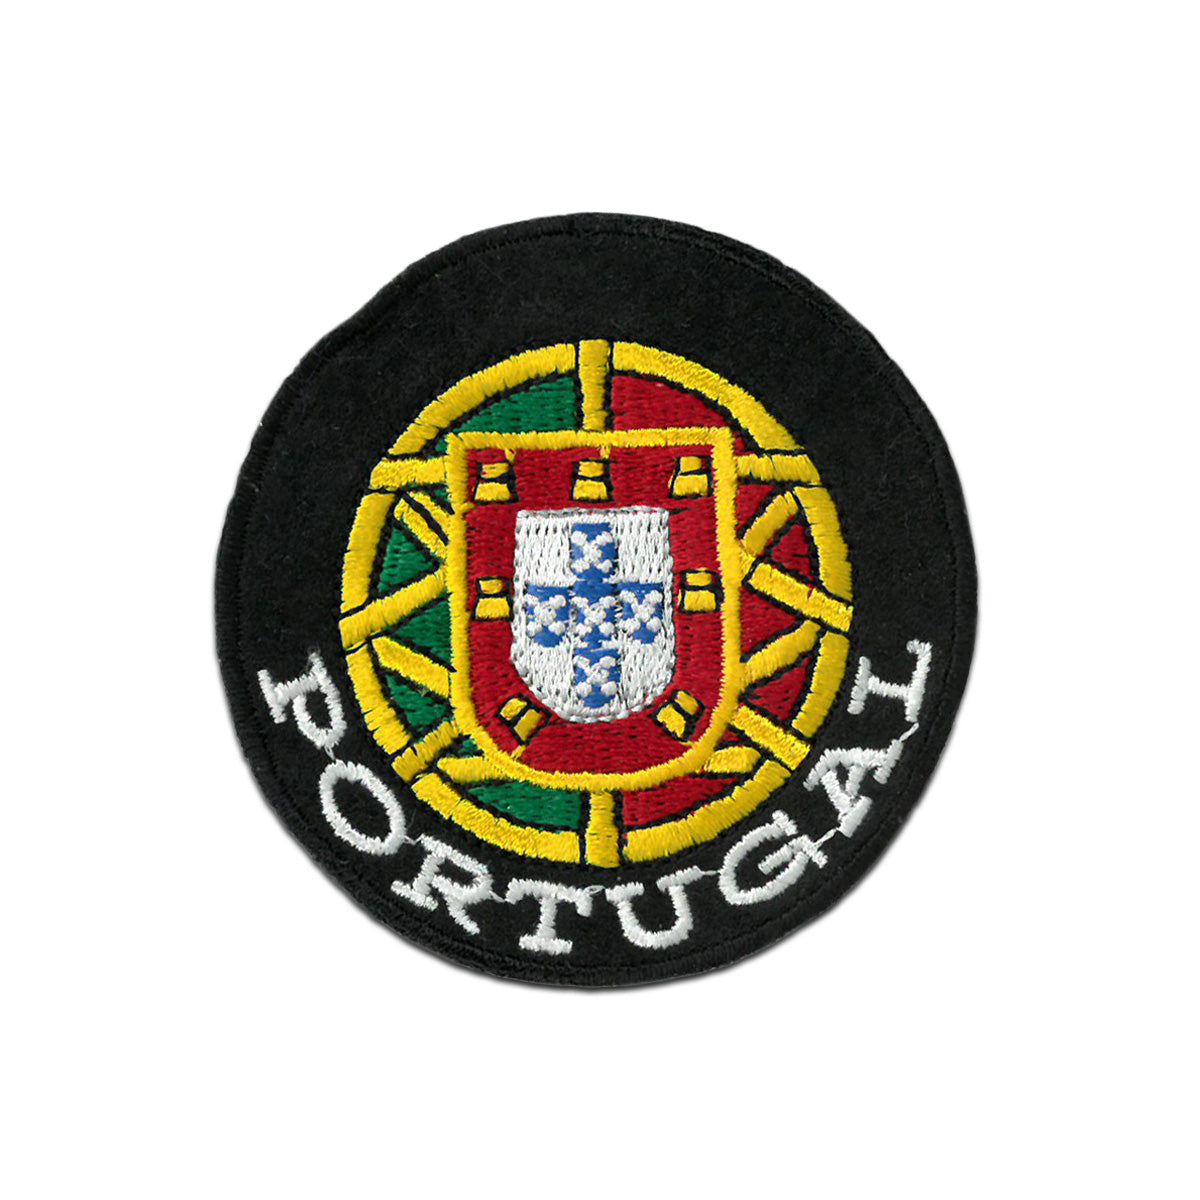 Escudo Bandeira de Portugal